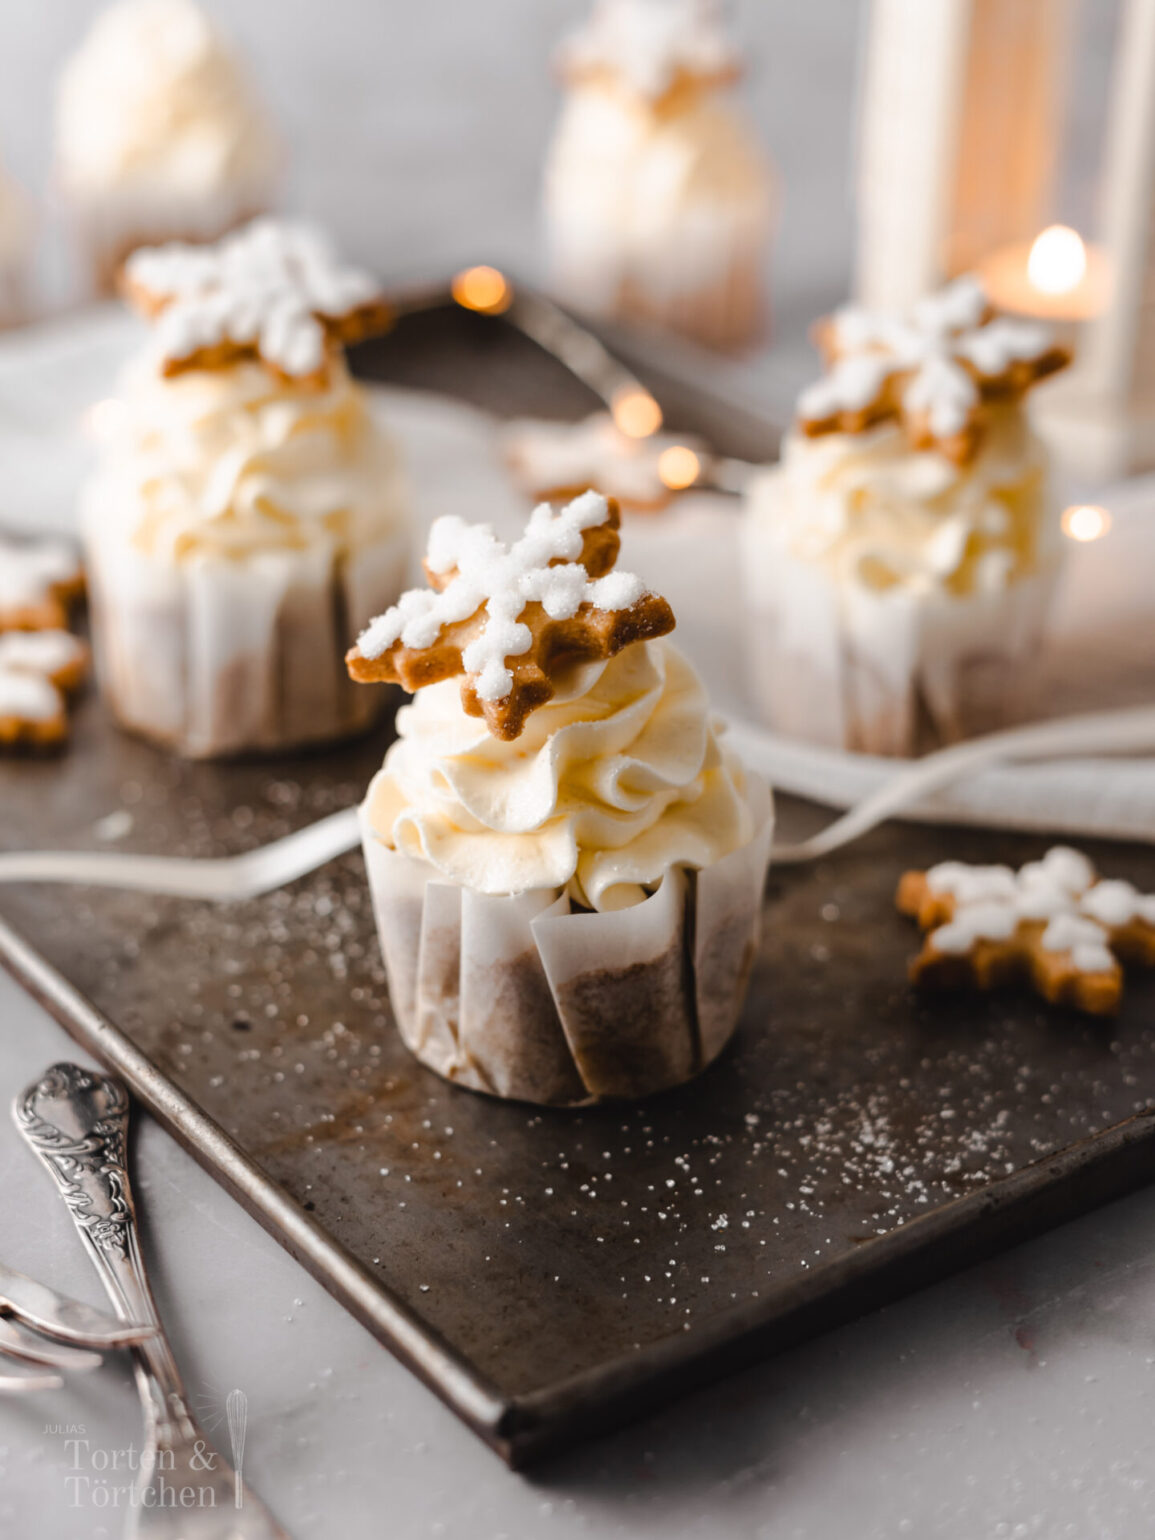 Einfaches Rezept für gewürzte Mandel Cupcakes mit luftigem hellem Orangen-Frischkäsefrosting und heller Zimt-Haselnuss Füllung. Elegant und weihnachtlich dekoriert mit Royal Icing Plätzchen. #Cupcakes #Rezept #Weihnachtscupcakes #Wintercupcakes #Weihnachtstorte #Mürbeteigplätzchen #royalicing